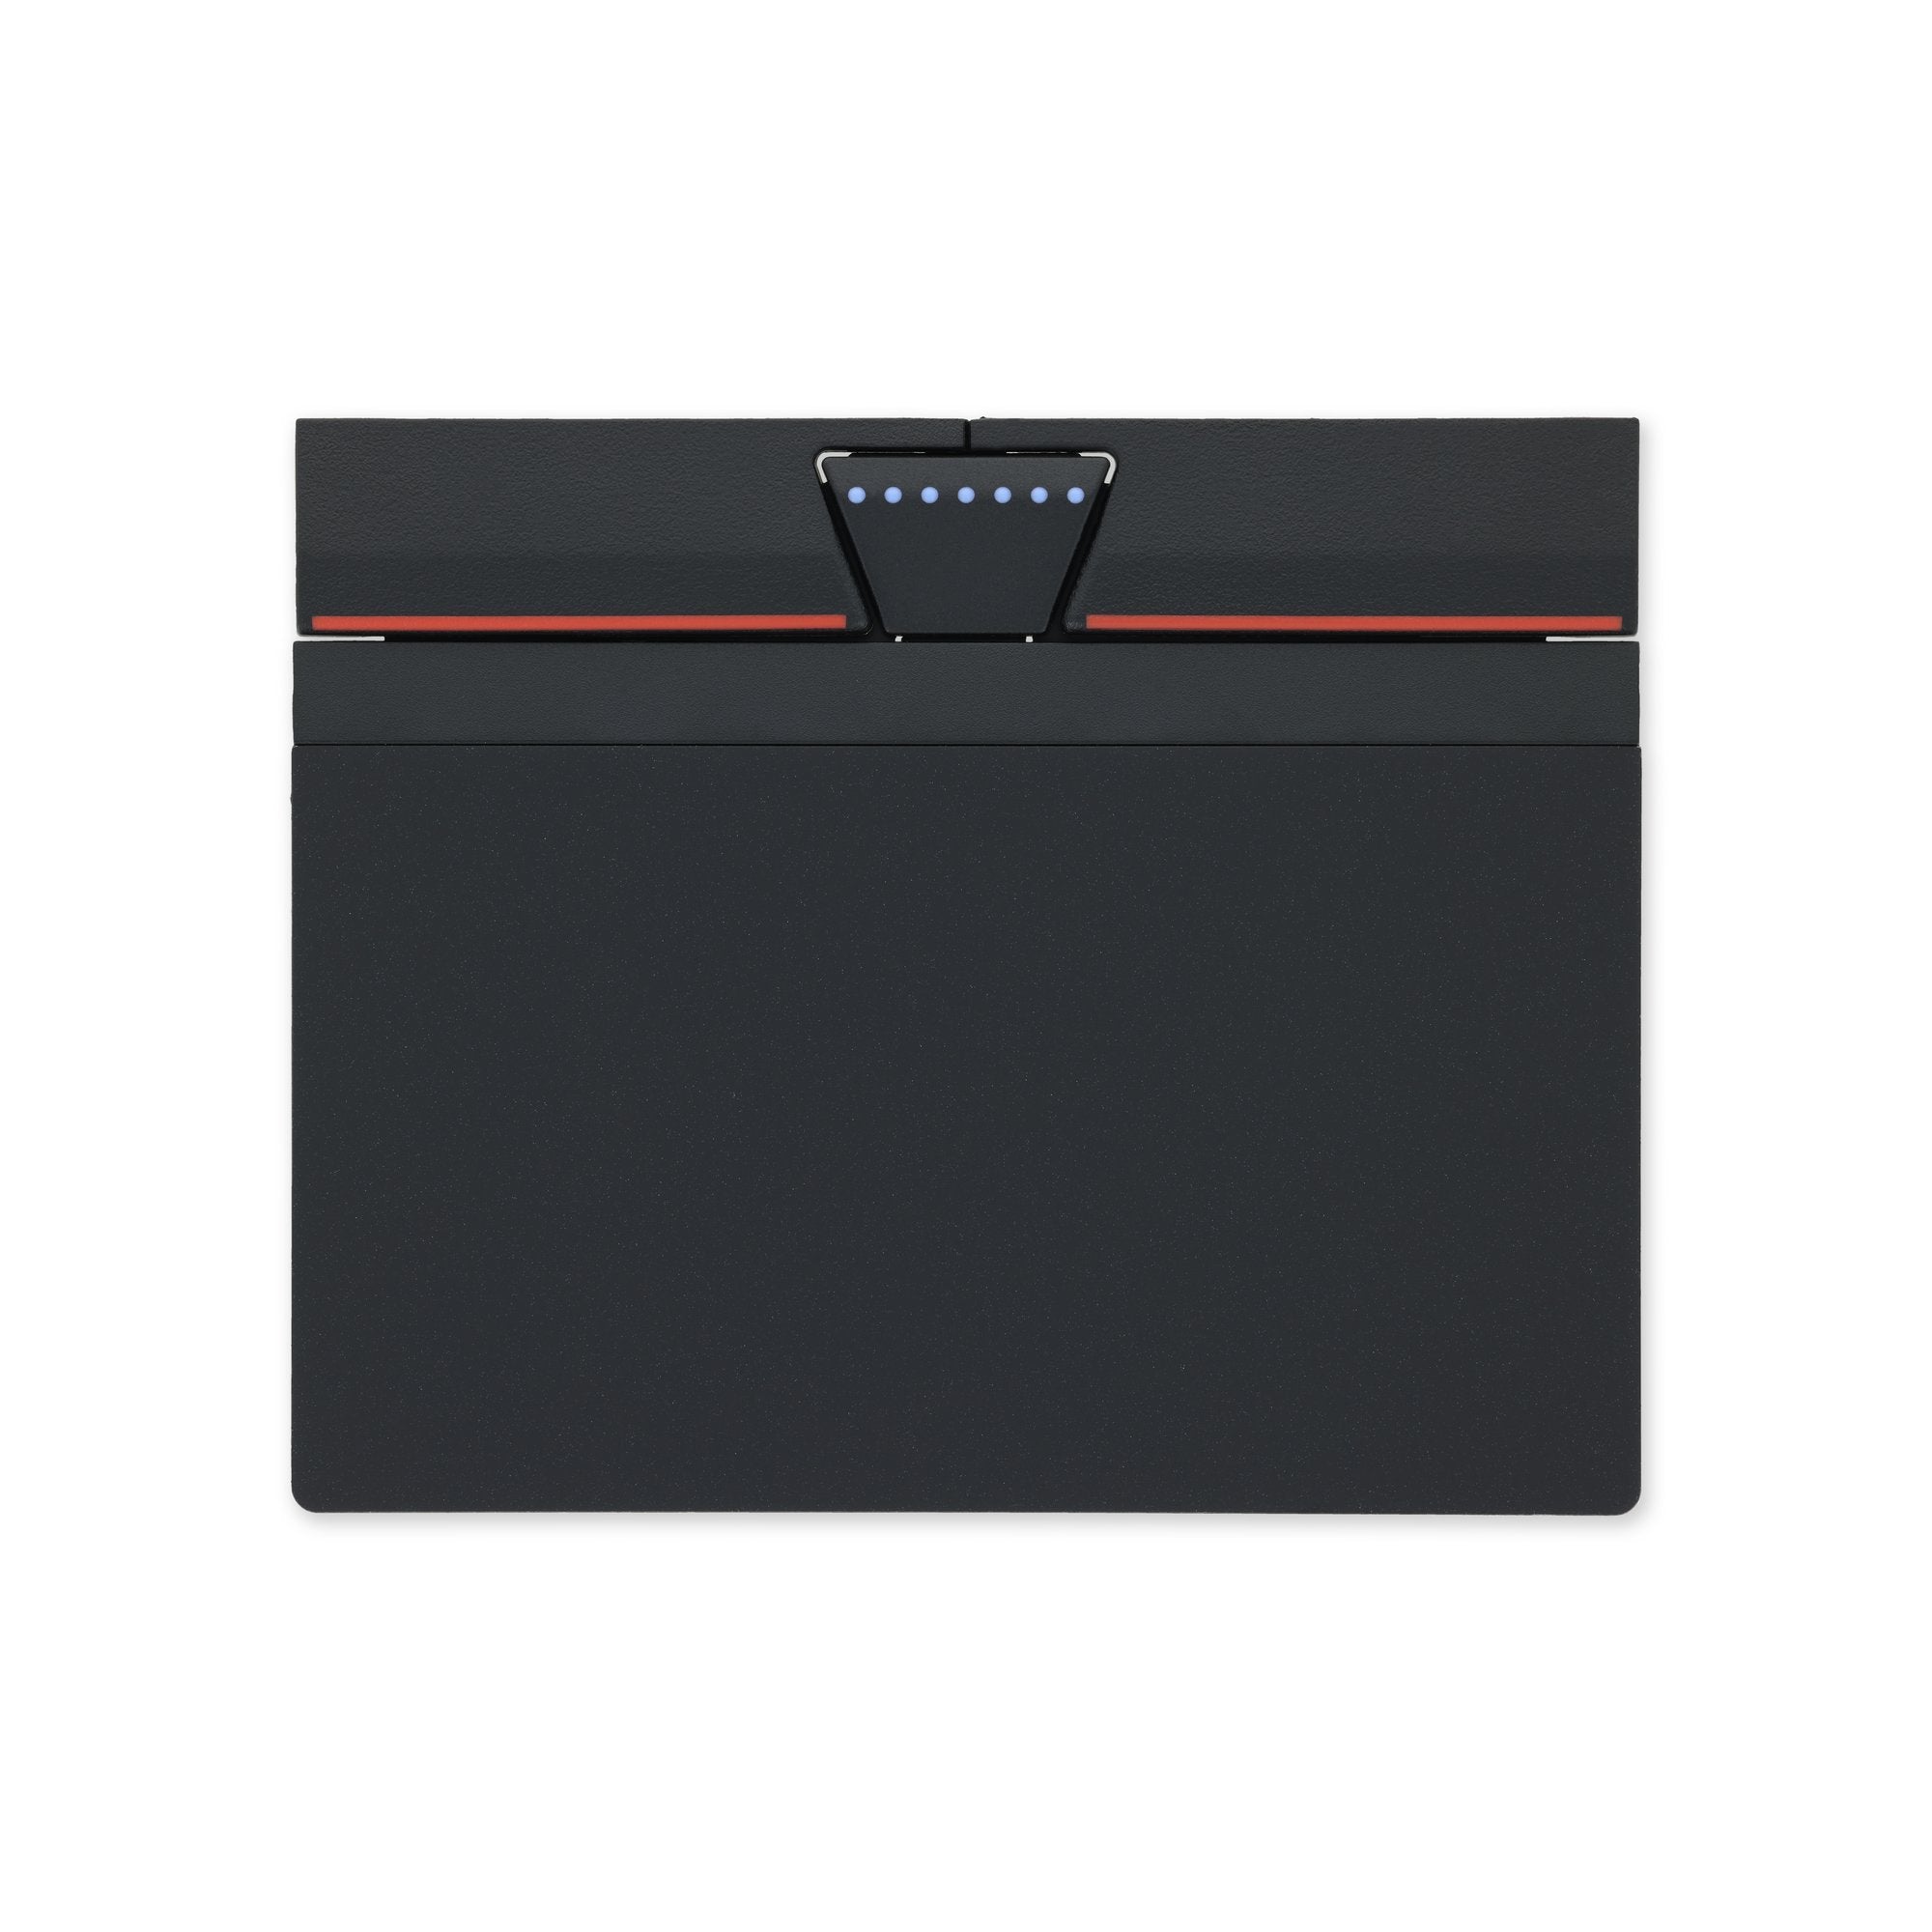 Lenovo ThinkPad T460s/T470s Touchpad New